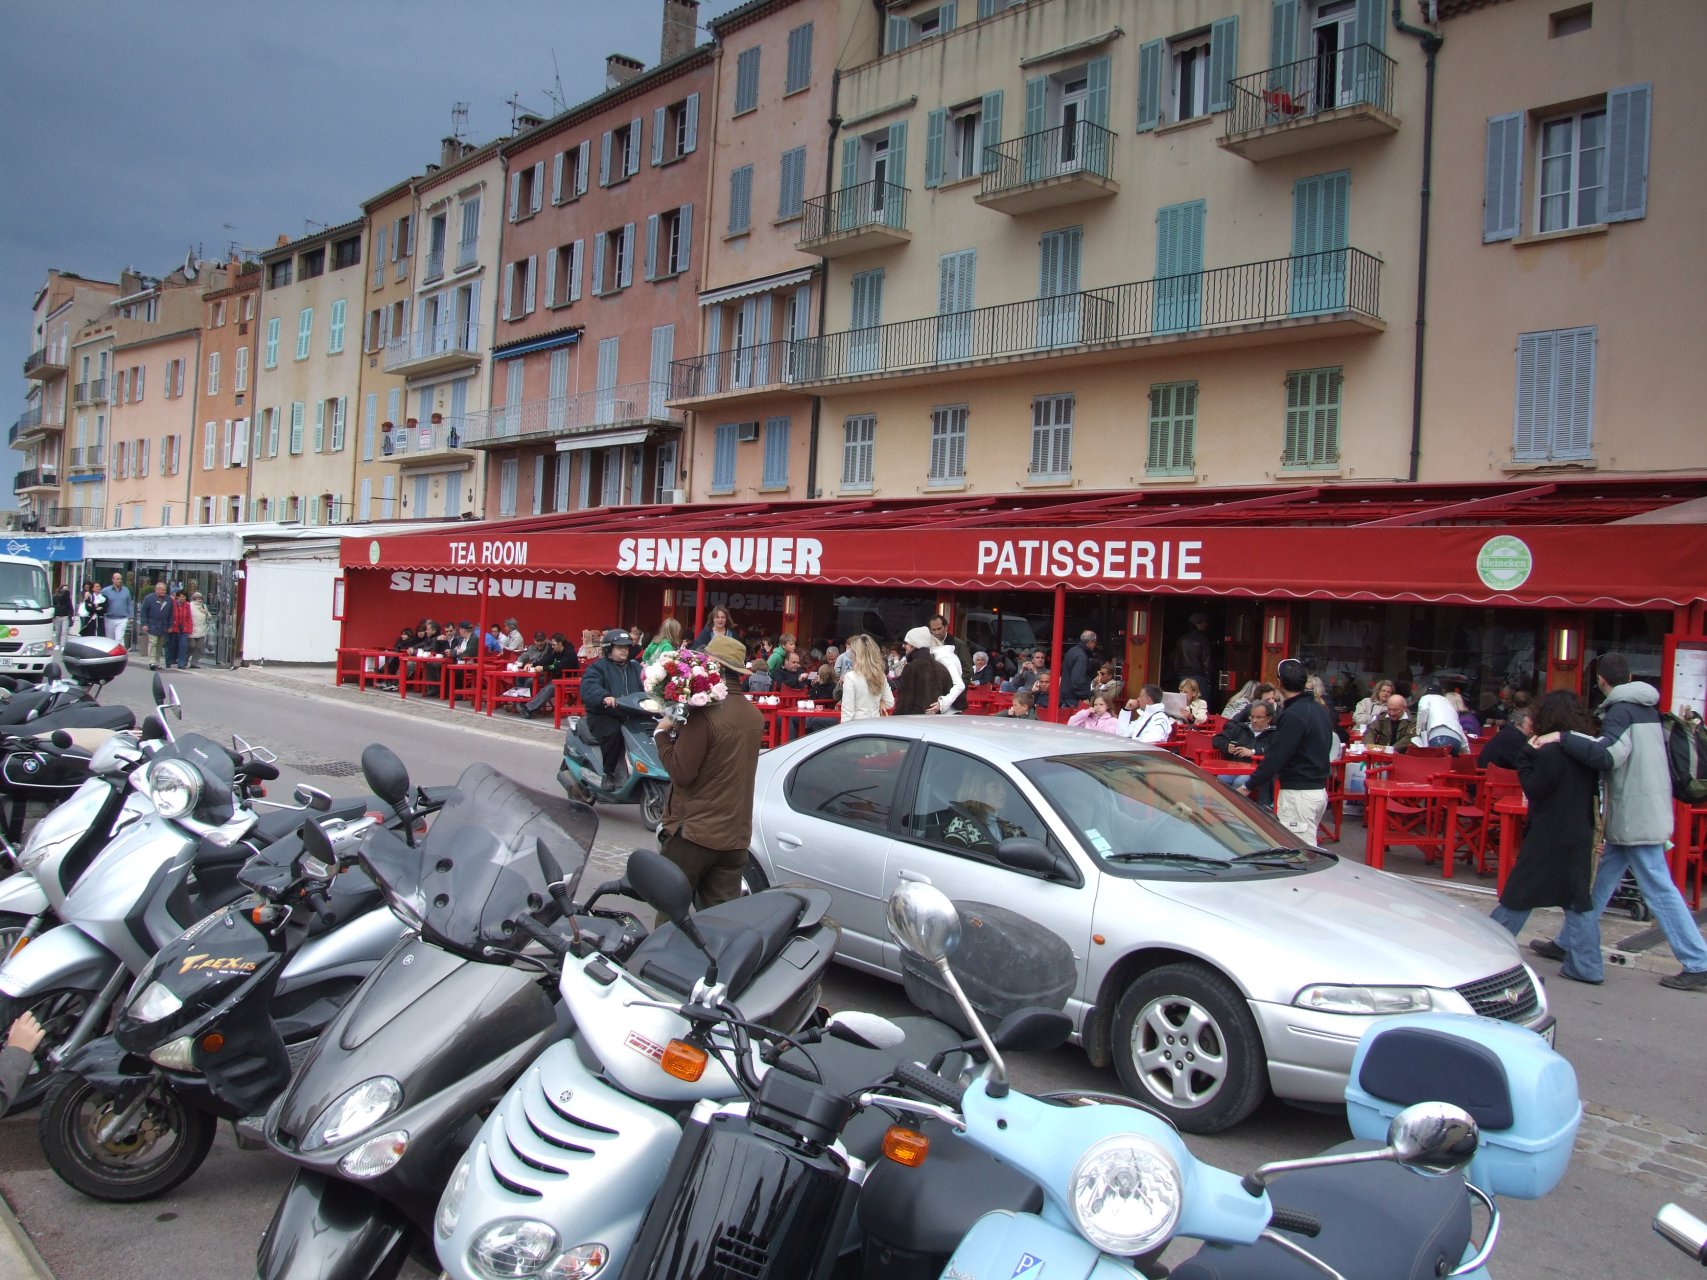 Restauracja Senequier - dawniej i dziś główny punkt w mieście